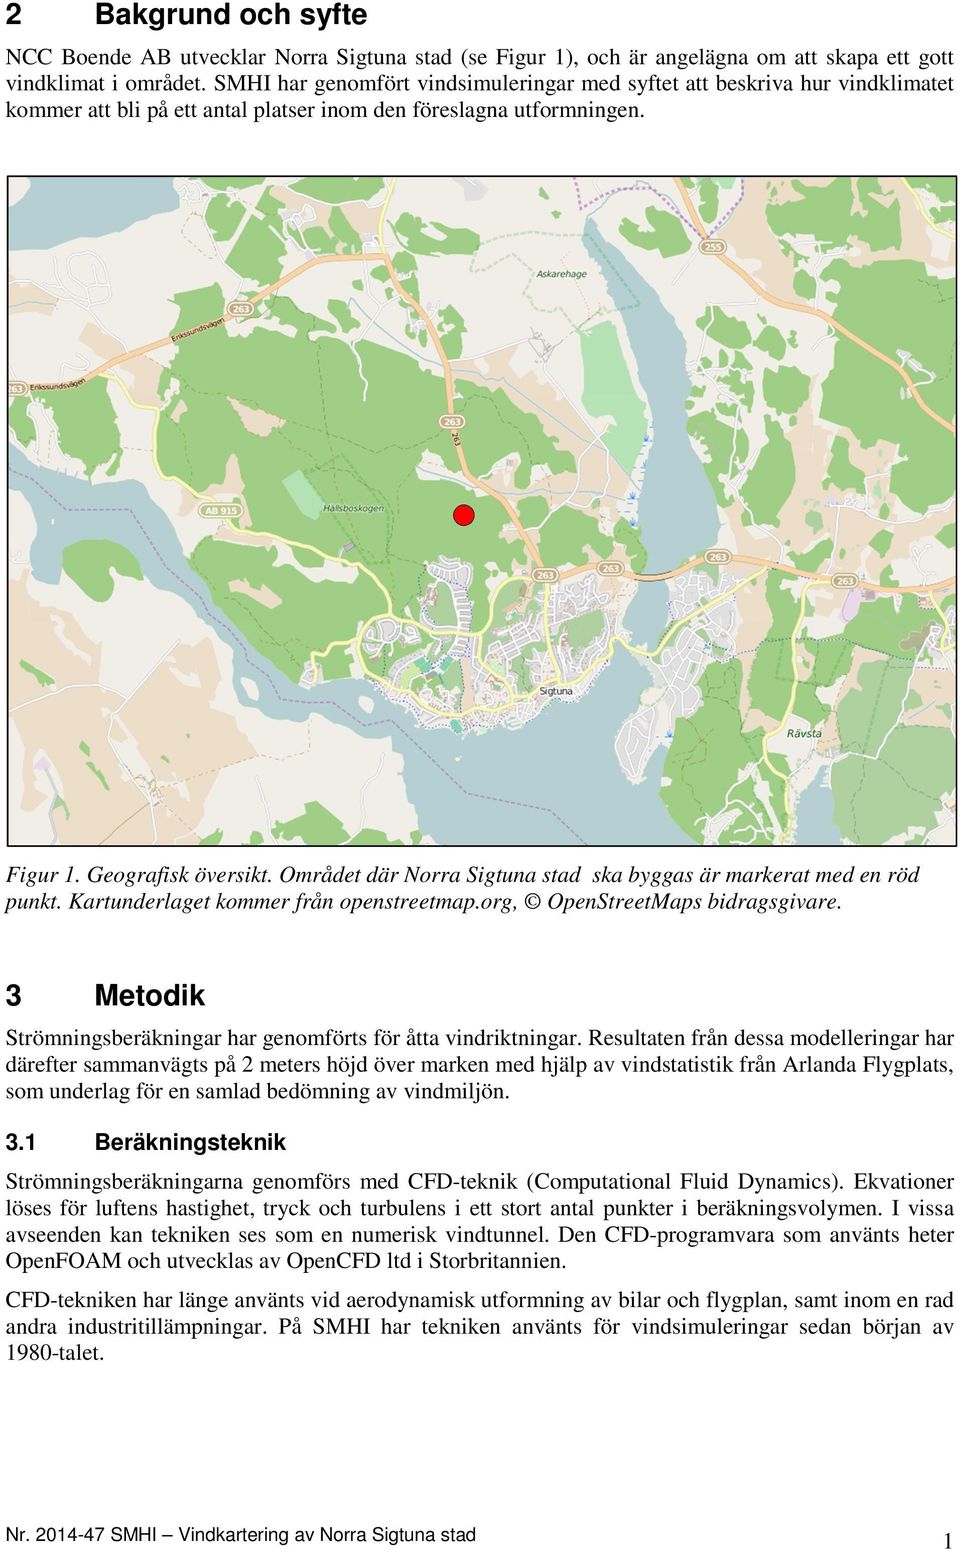 Området där Norra Sigtuna stad ska byggas är markerat med en röd punkt. Kartunderlaget kommer från openstreetmap.org, OpenStreetMaps bidragsgivare.